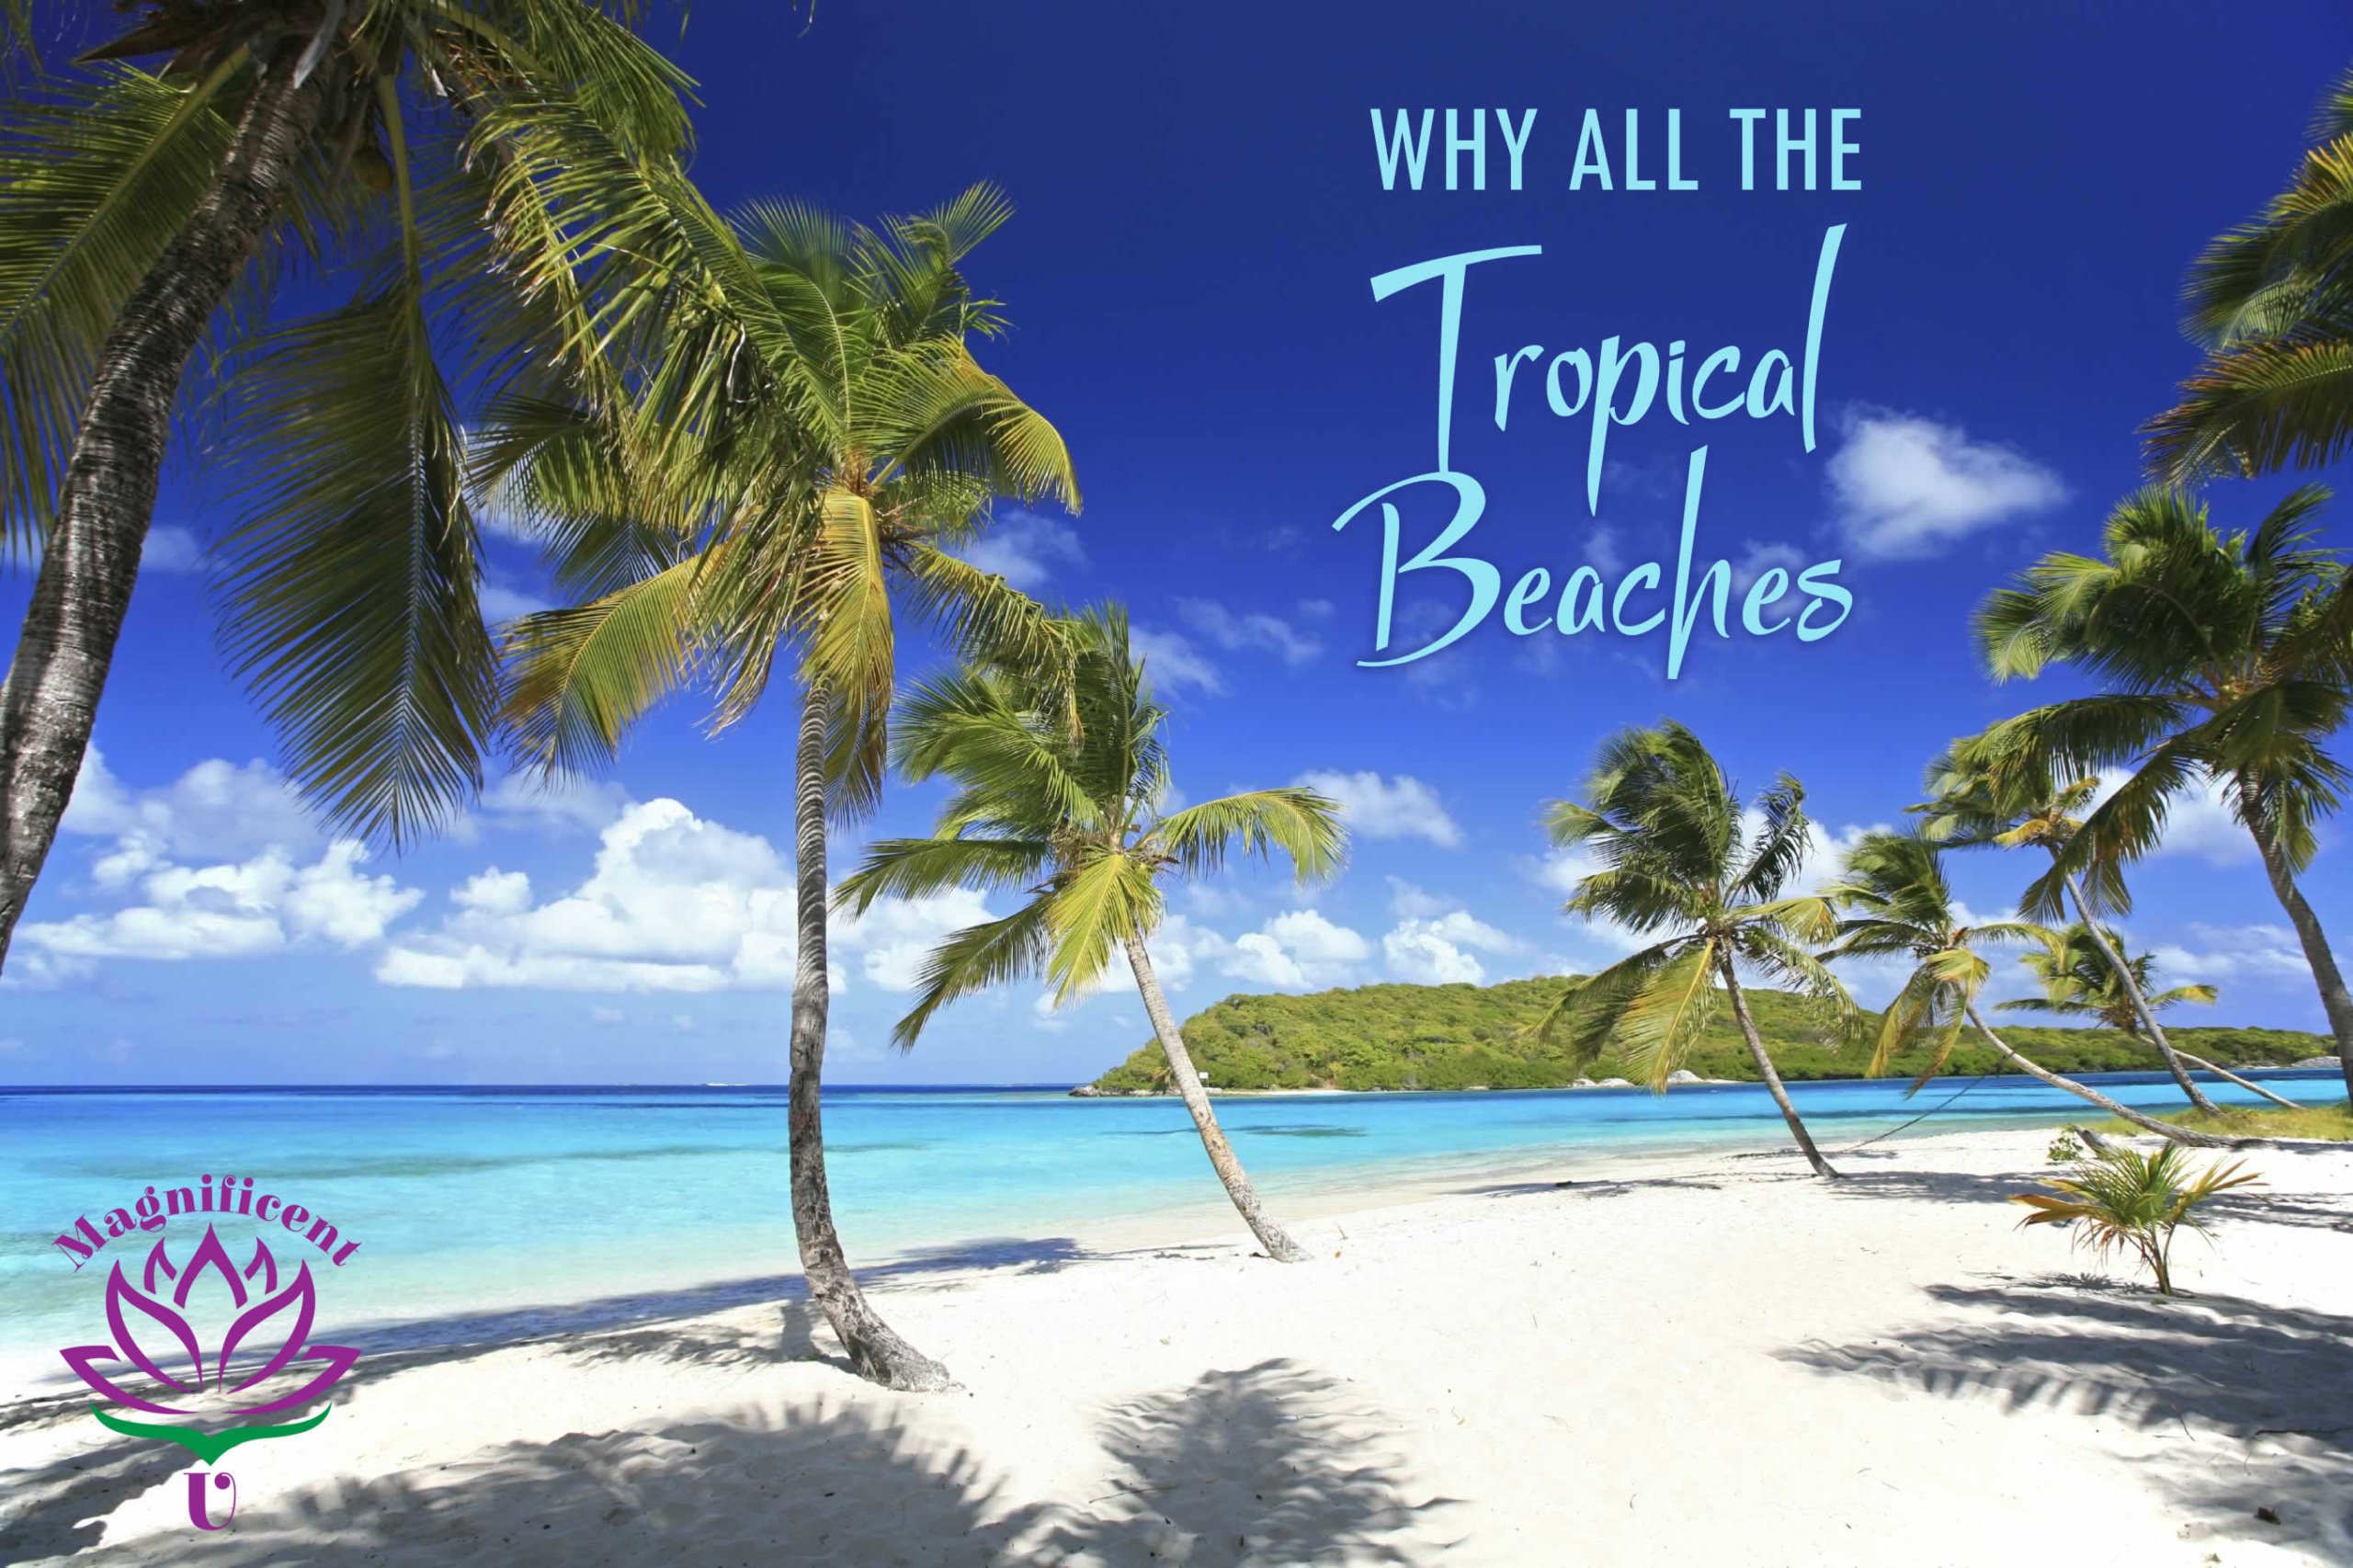 Why Tropical Beaches?